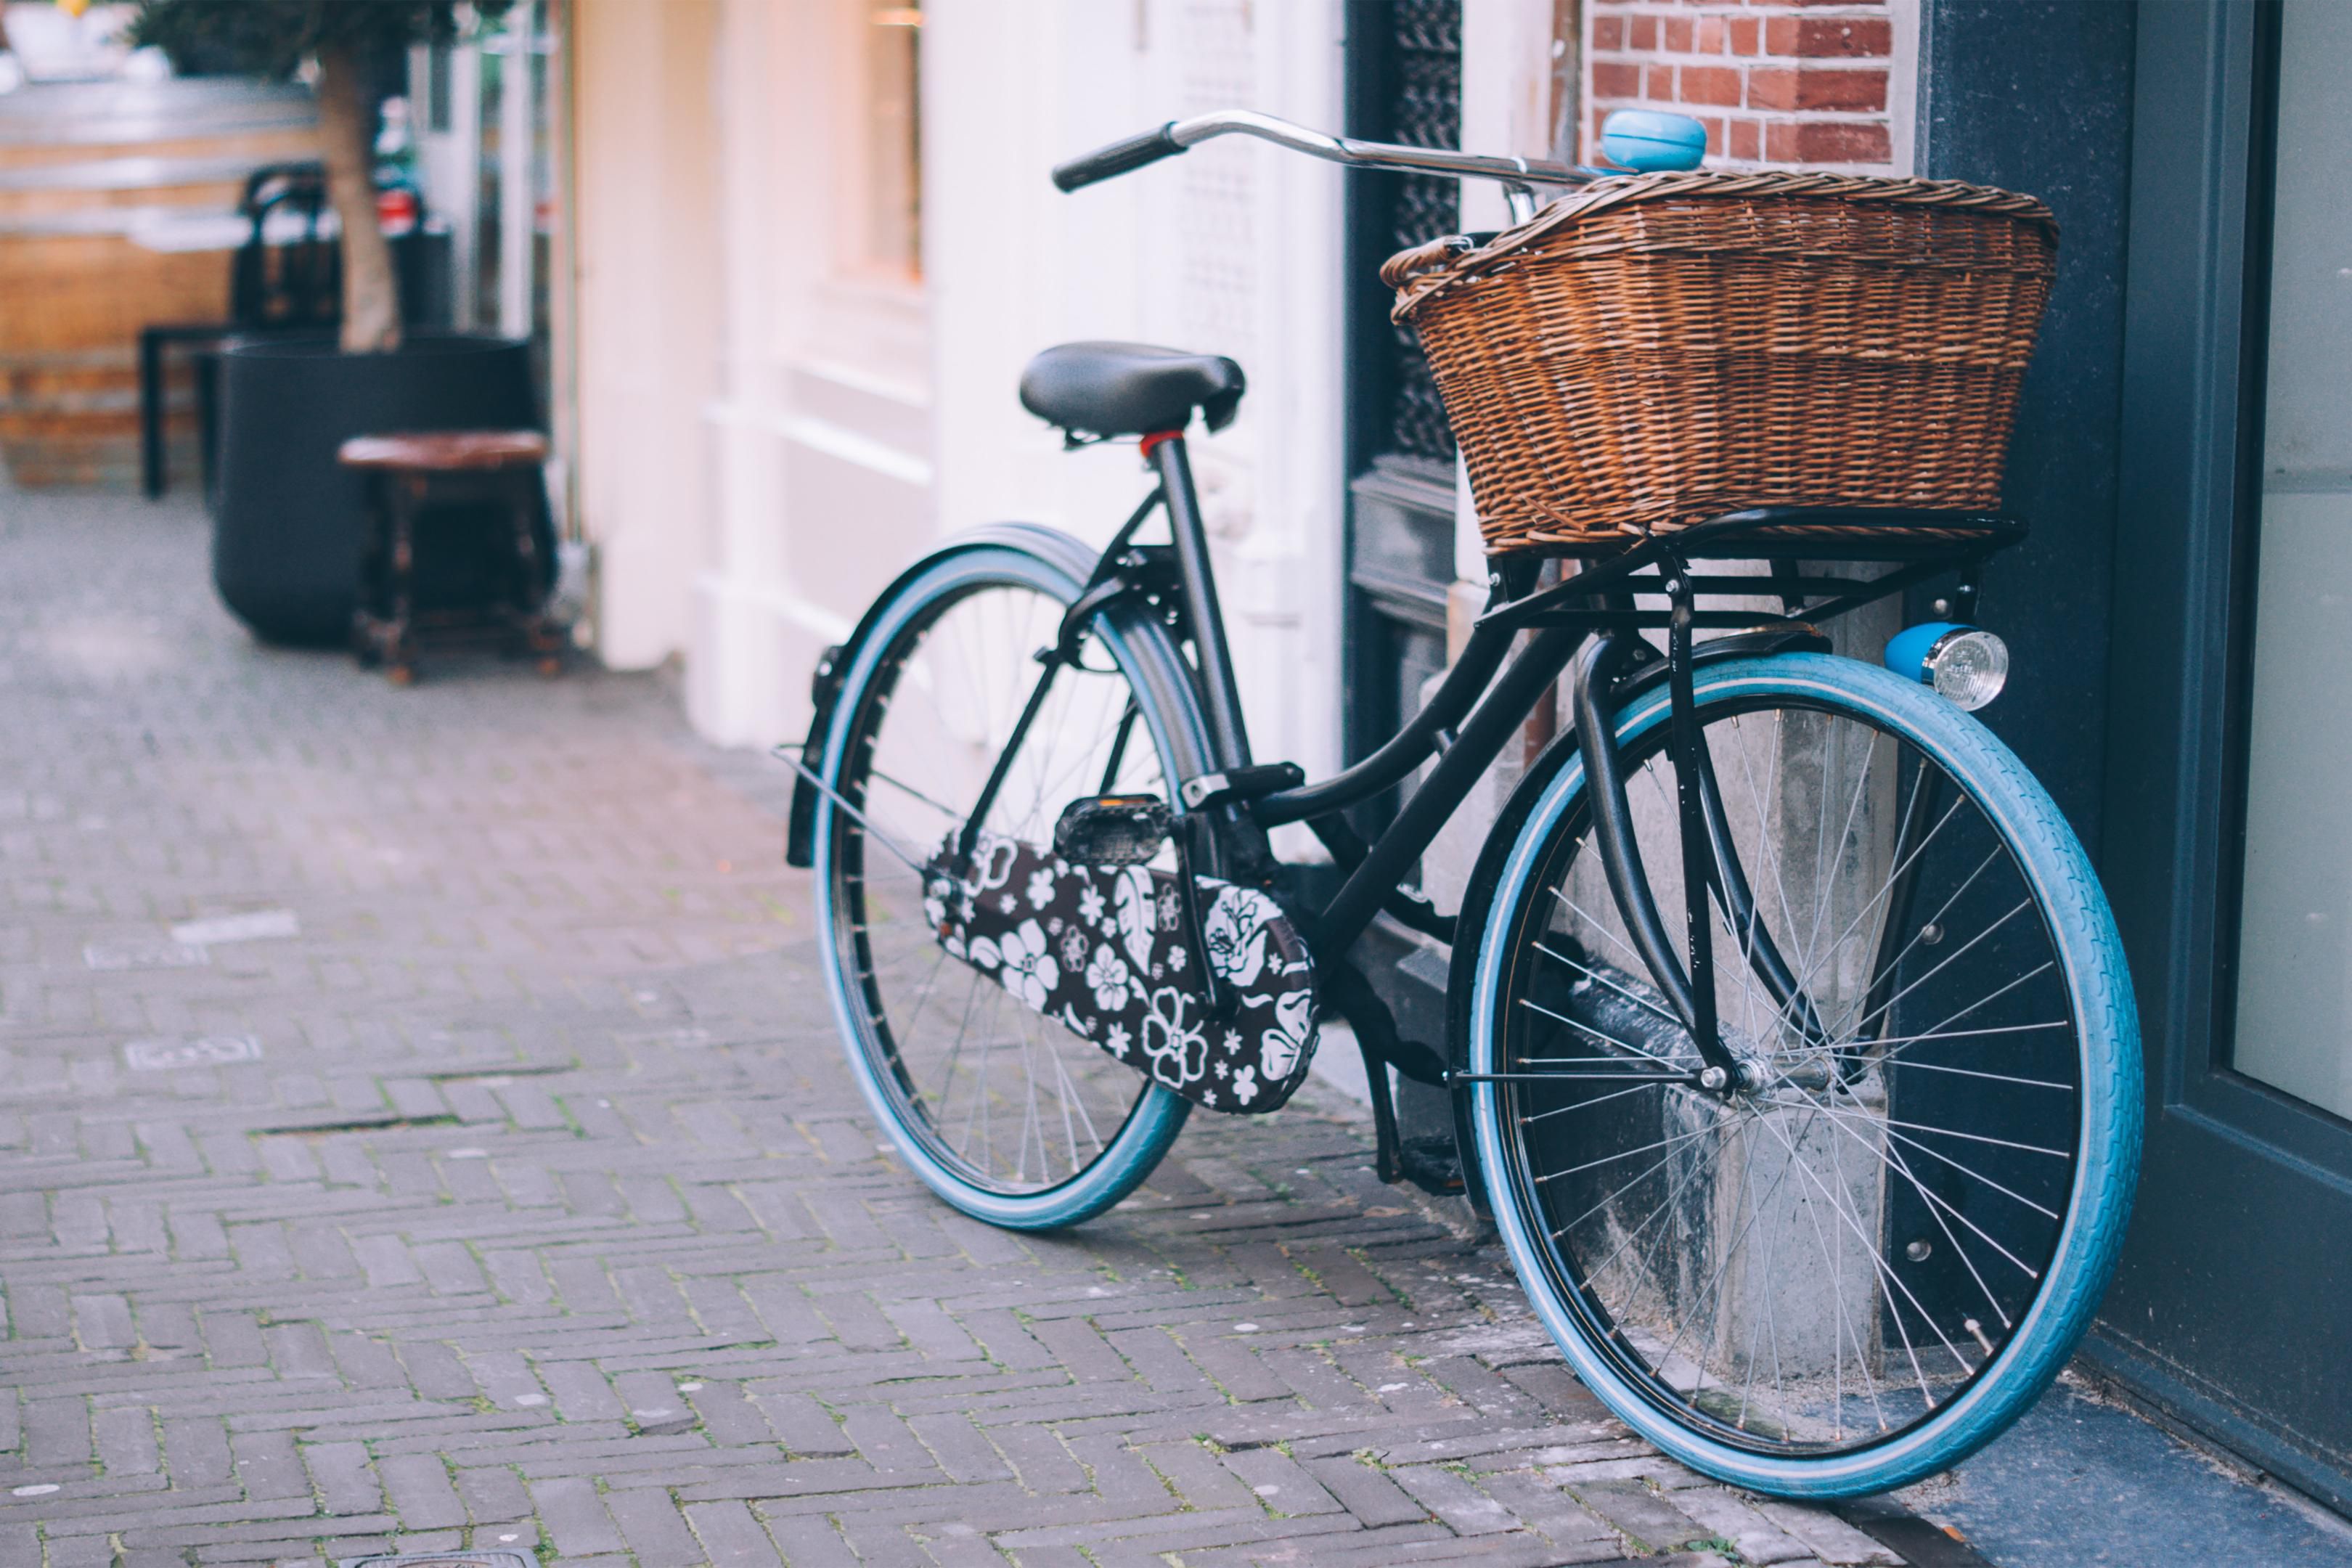 Le vélo est le meilleur moyen d'explorer La Haye. Soyez donc comme un Hollandais et louez l'un des vélos de l'hôtel. Les membres de notre équipe peuvent vous fournir des indications pour sortir et découvrir notre quartier. Qu'il s'agisse d'expériences à voir, à écouter ou à manger, ou de joyaux cachés hors des sentiers battus.